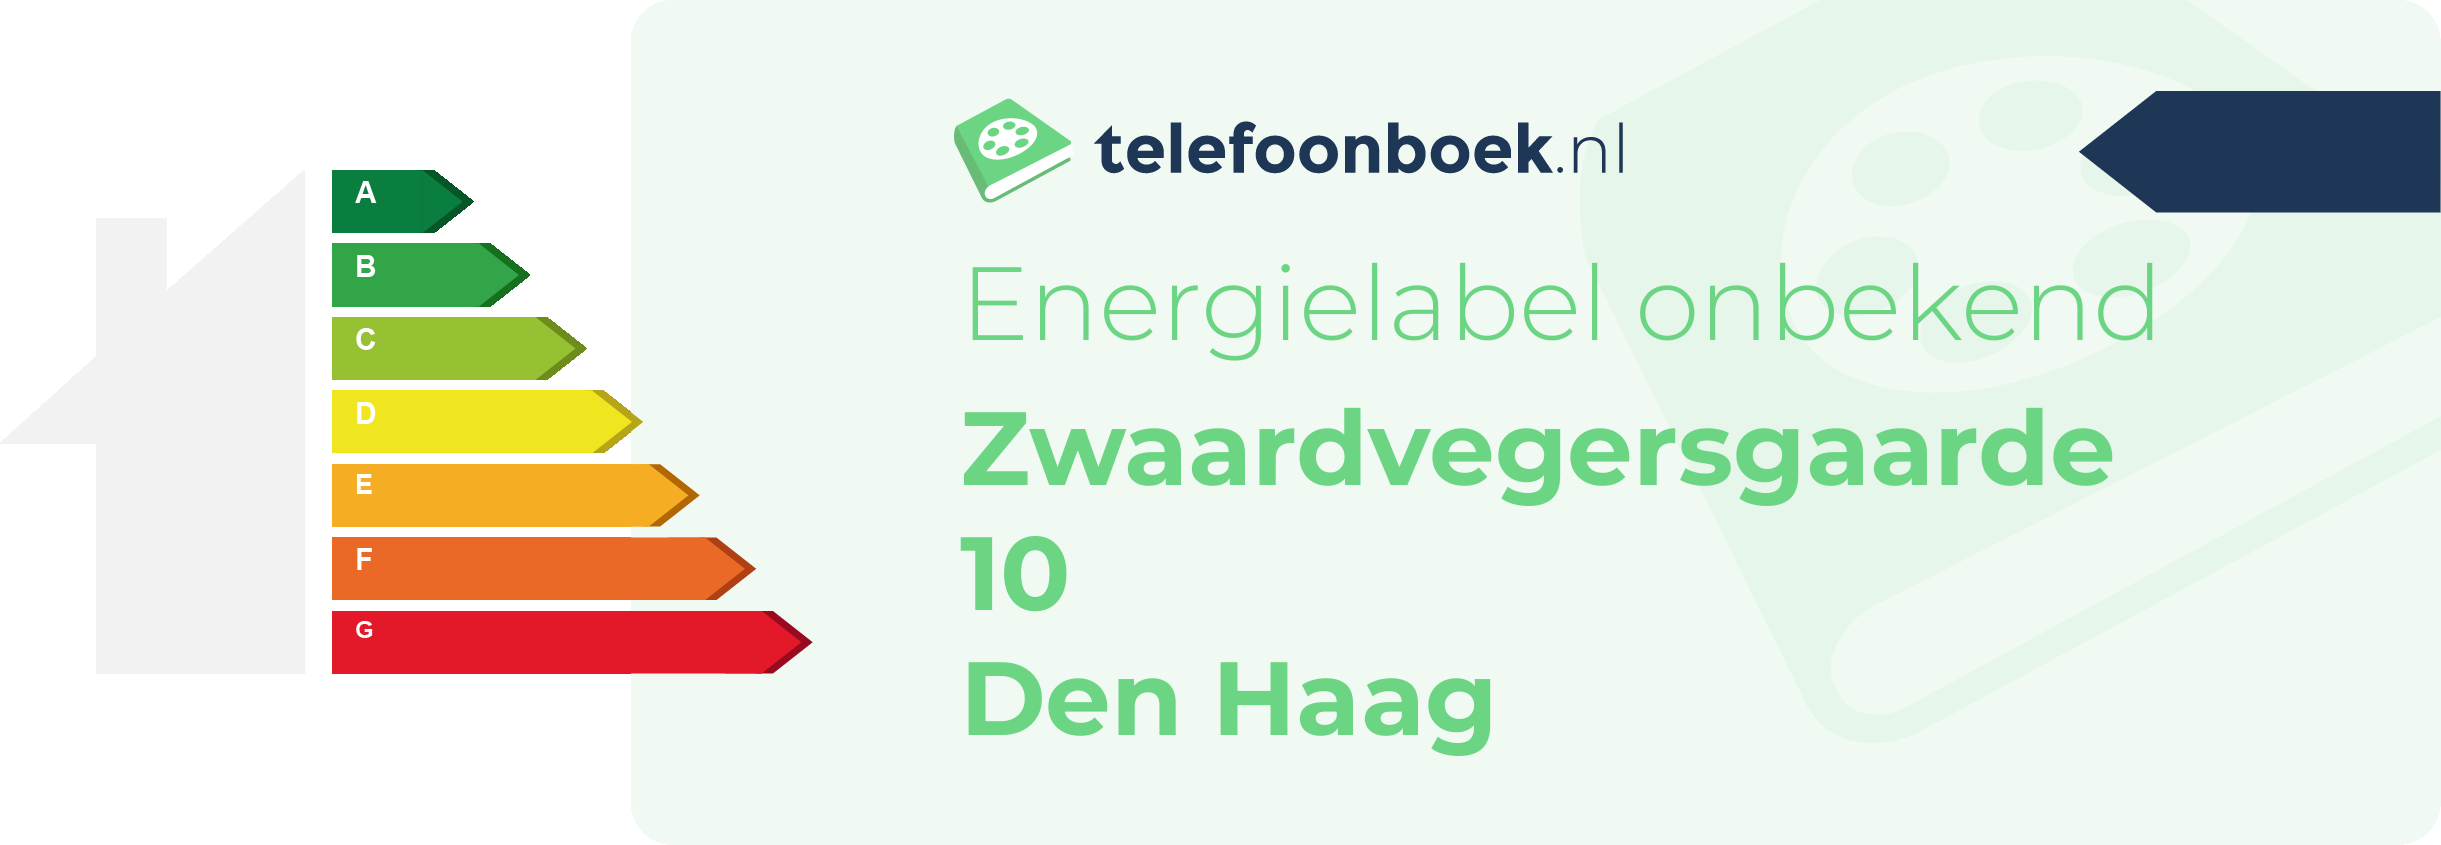 Energielabel Zwaardvegersgaarde 10 Den Haag